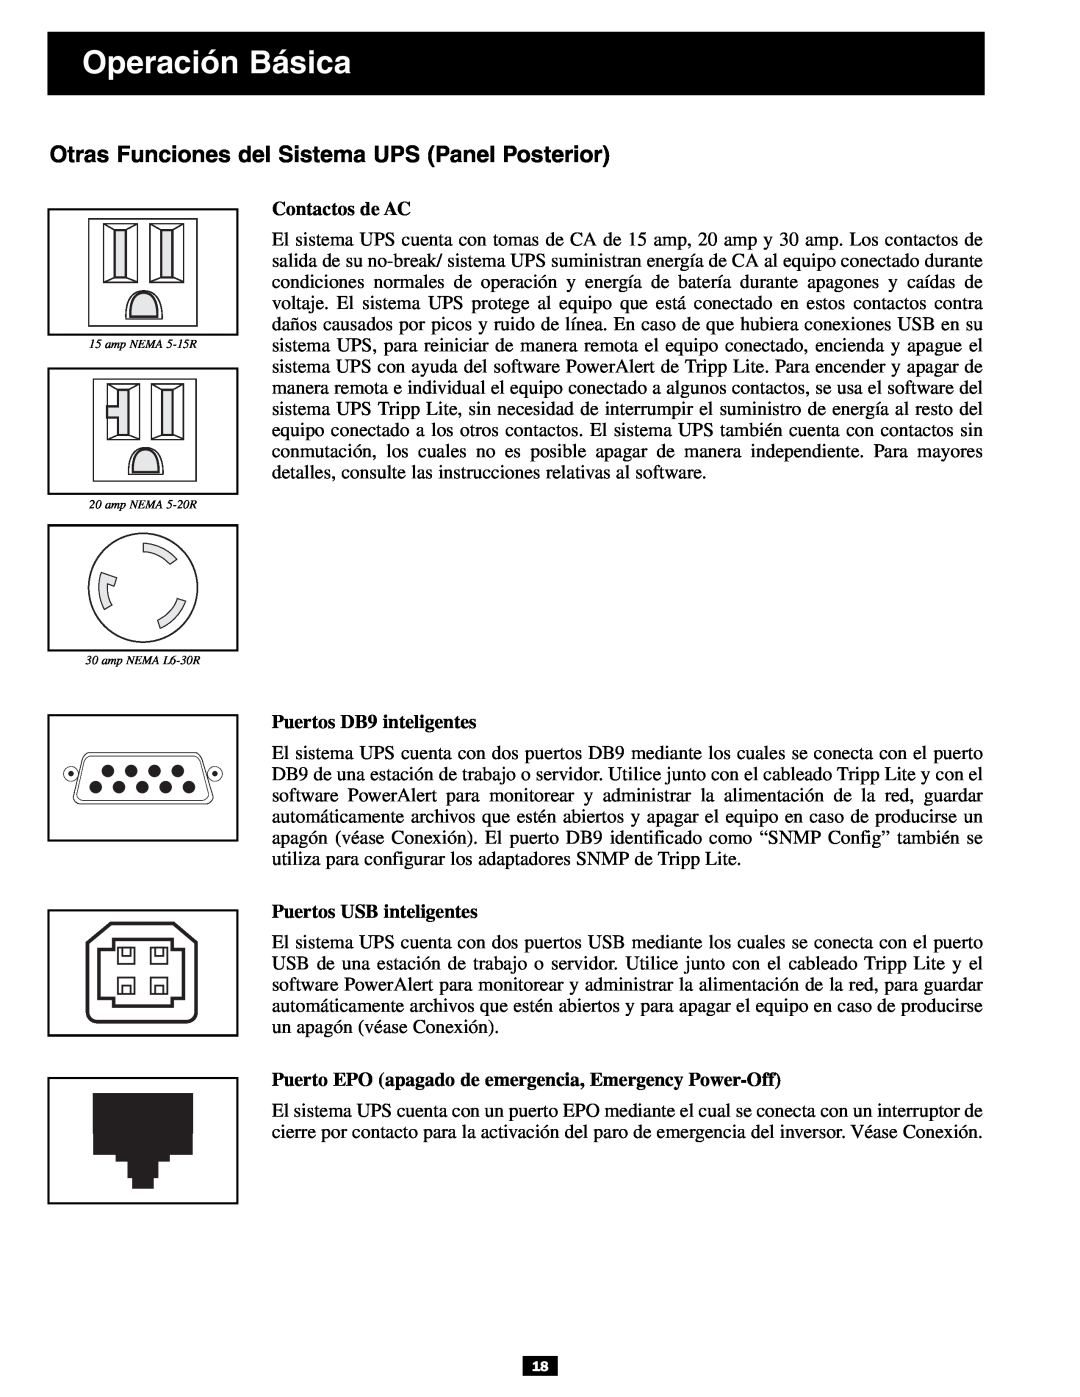 Tripp Lite 3U Otras Funciones del Sistema UPS Panel Posterior, Contactos de AC, Puertos DB9 inteligentes, Operación Básica 